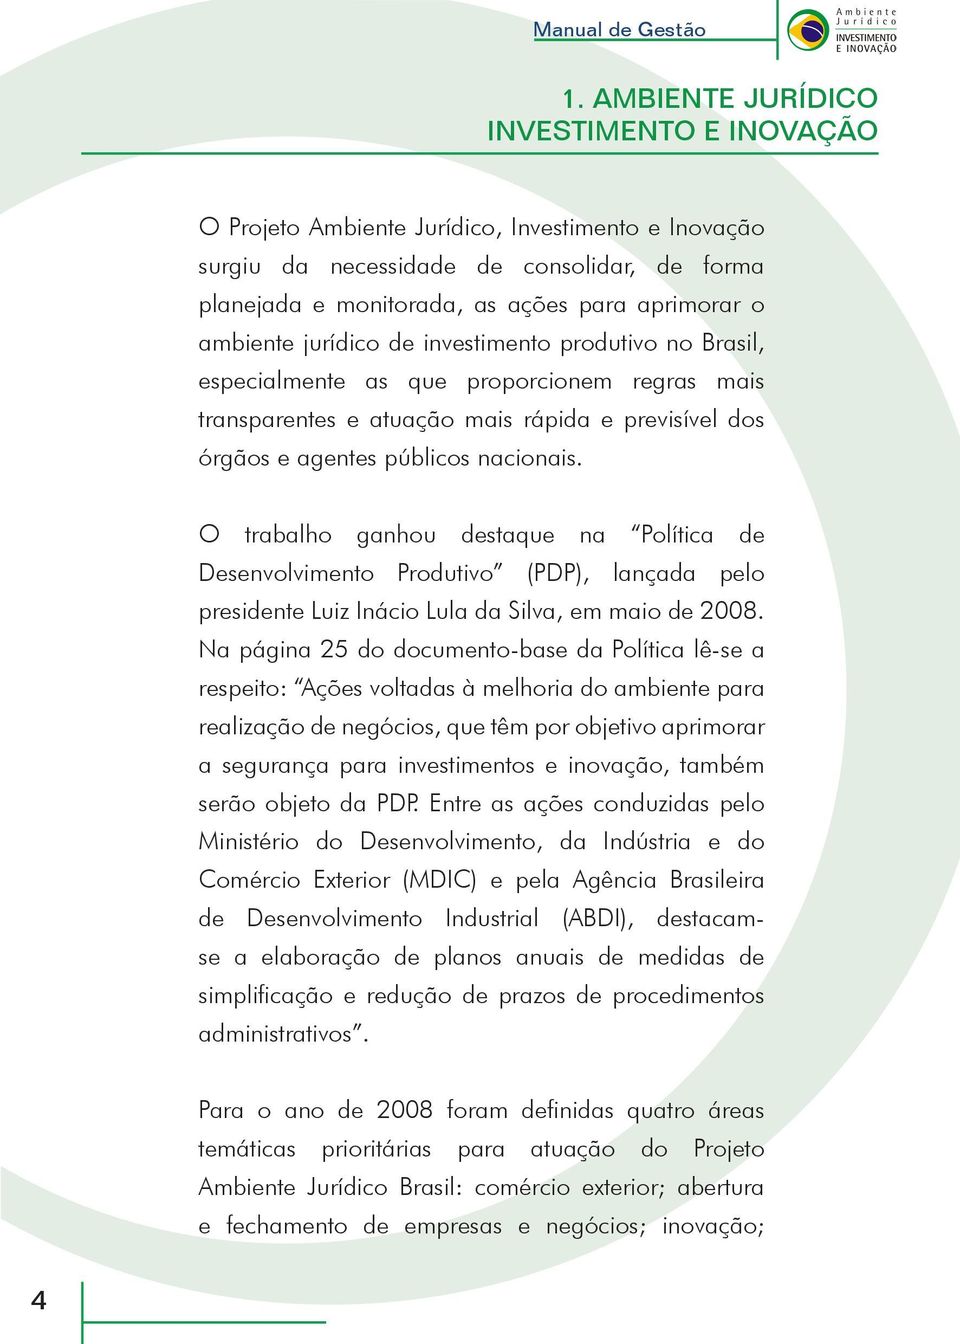 O trabalho ganhou destaque na Política de Desenvolvimento Produtivo (PDP), lançada pelo presidente Luiz Inácio Lula da Silva, em maio de 2008.